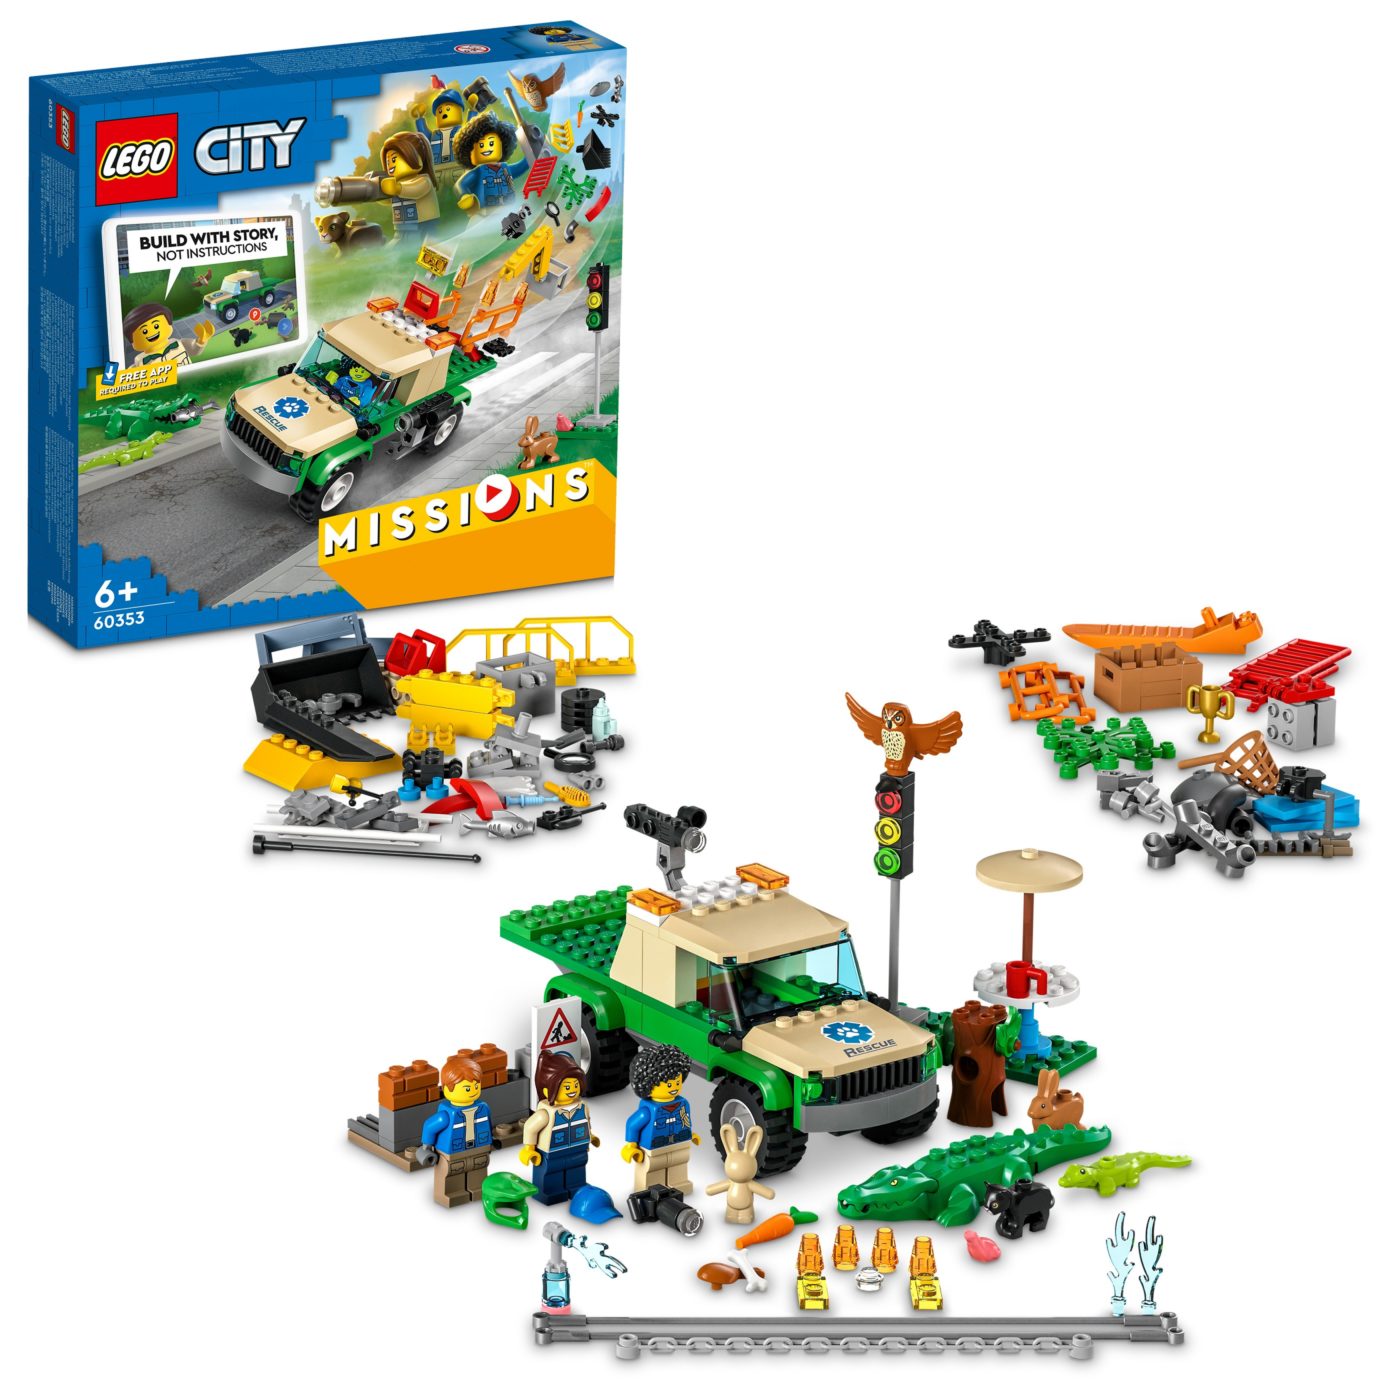 Stavning det er smukt skab New LEGO City Missions sets swap traditional instructions for interactive  storybuilding - Jay's Brick Blog